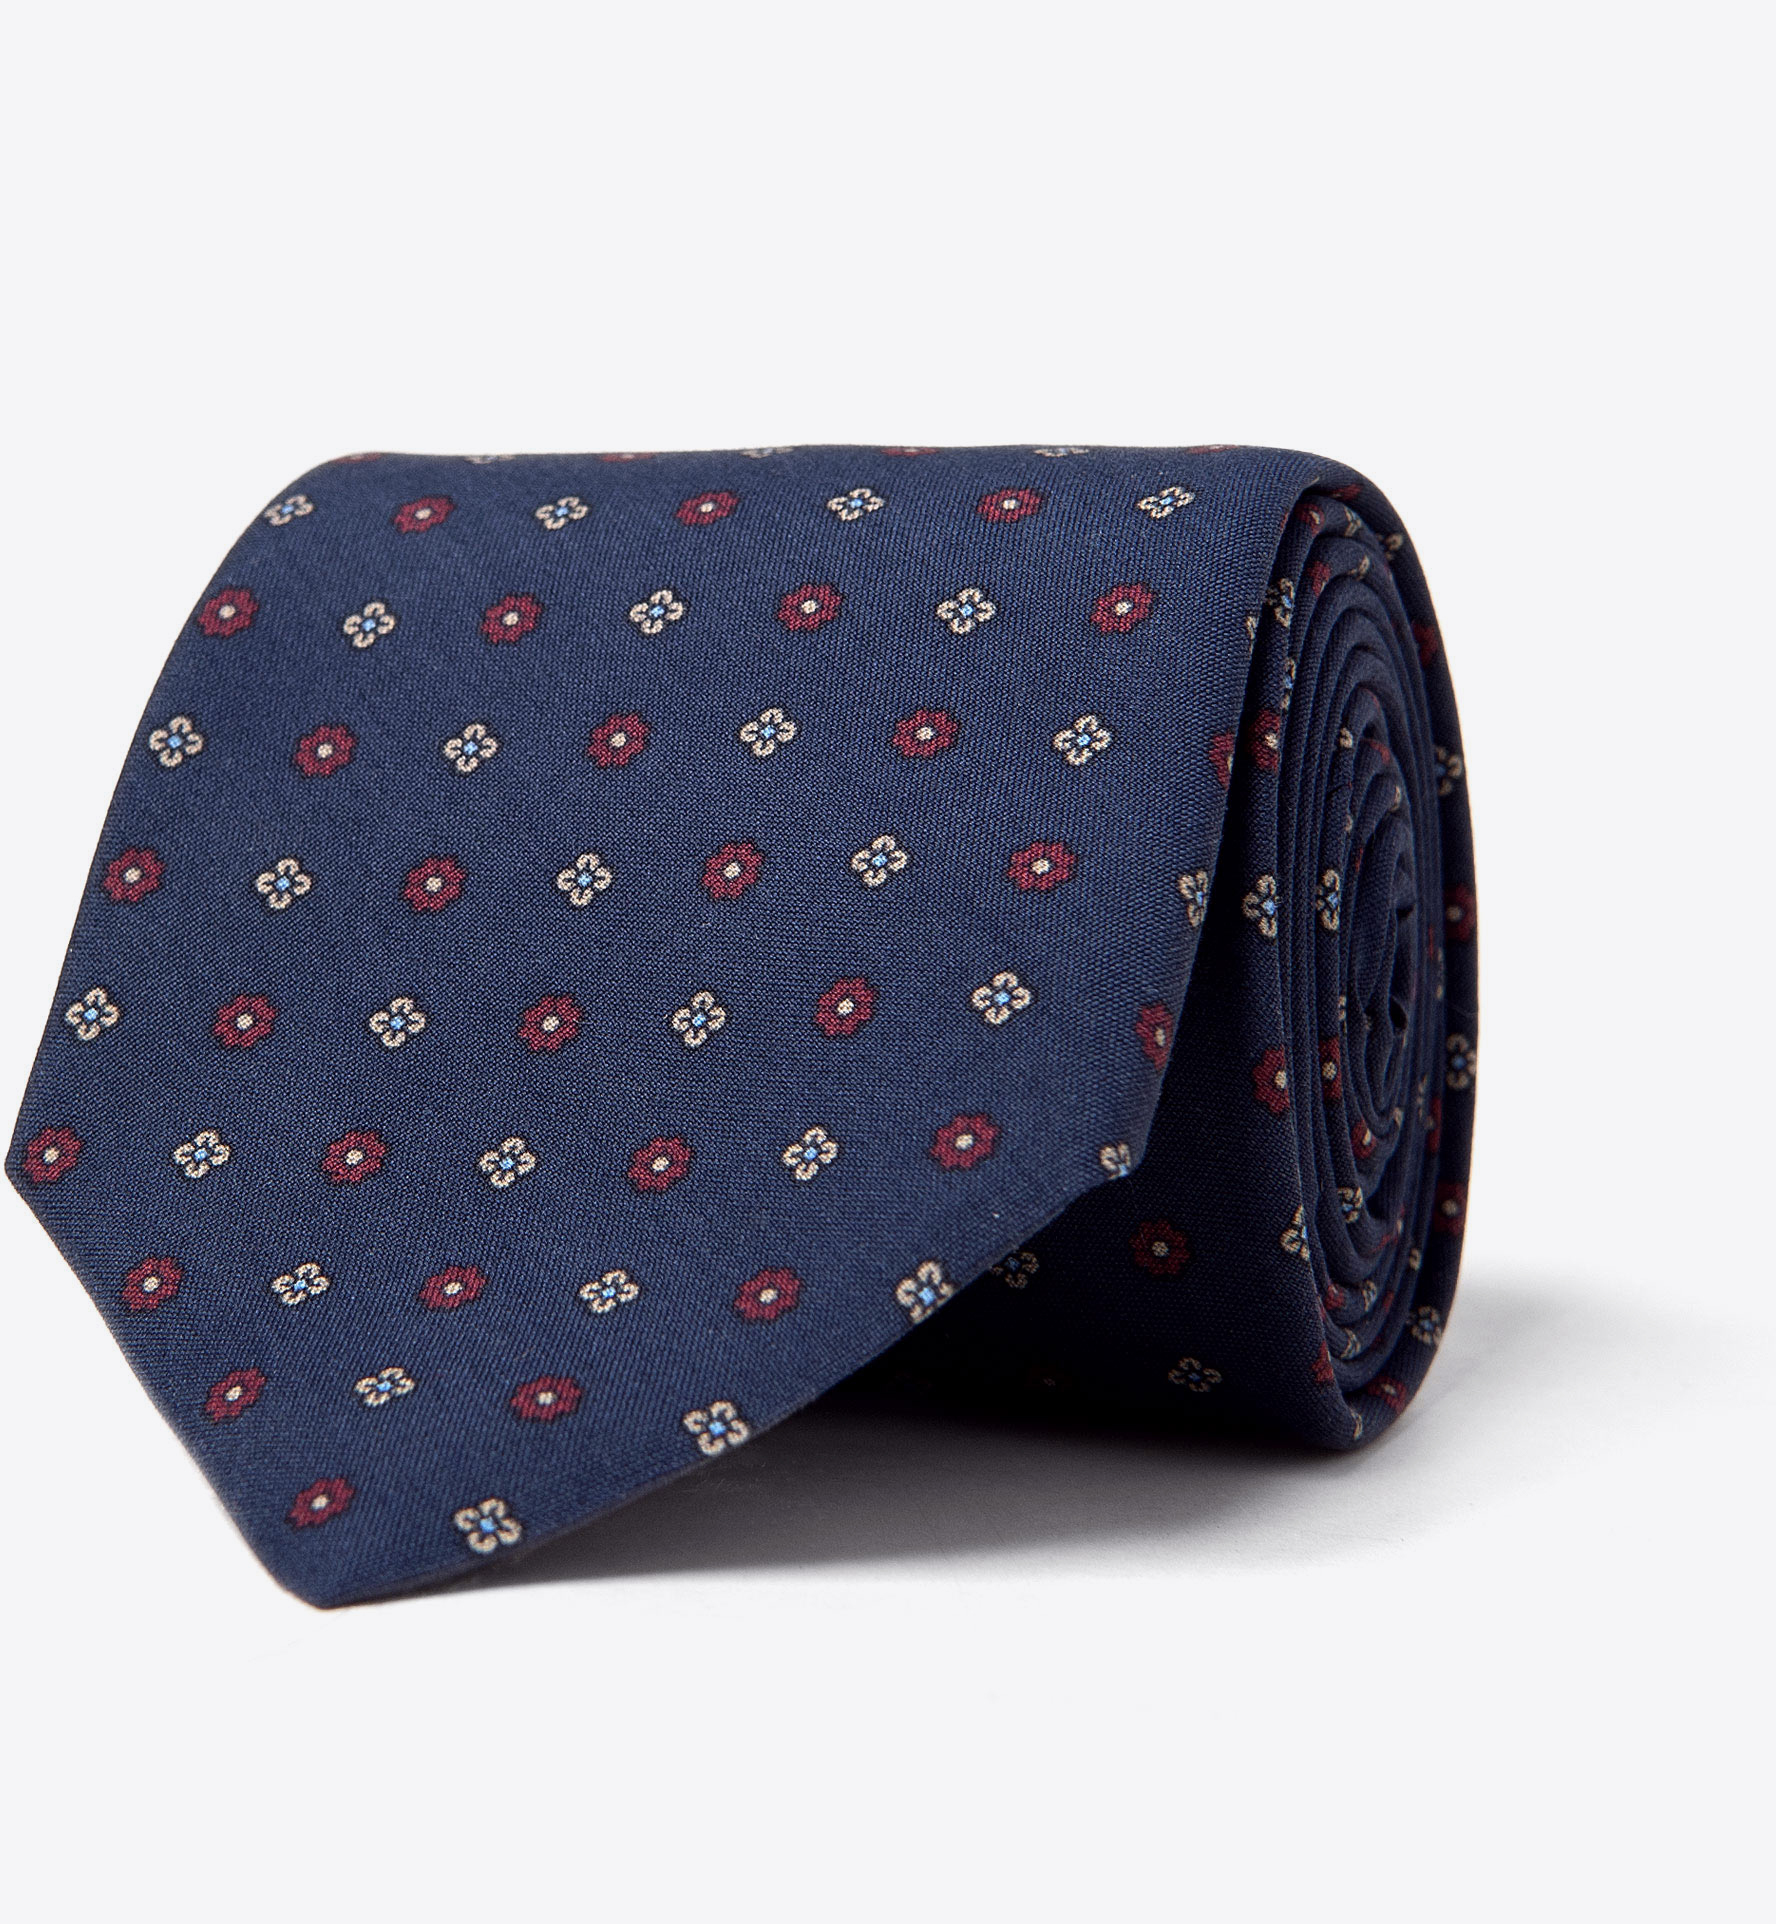 Zoom Image of Navy Foulard Madder Silk Tie